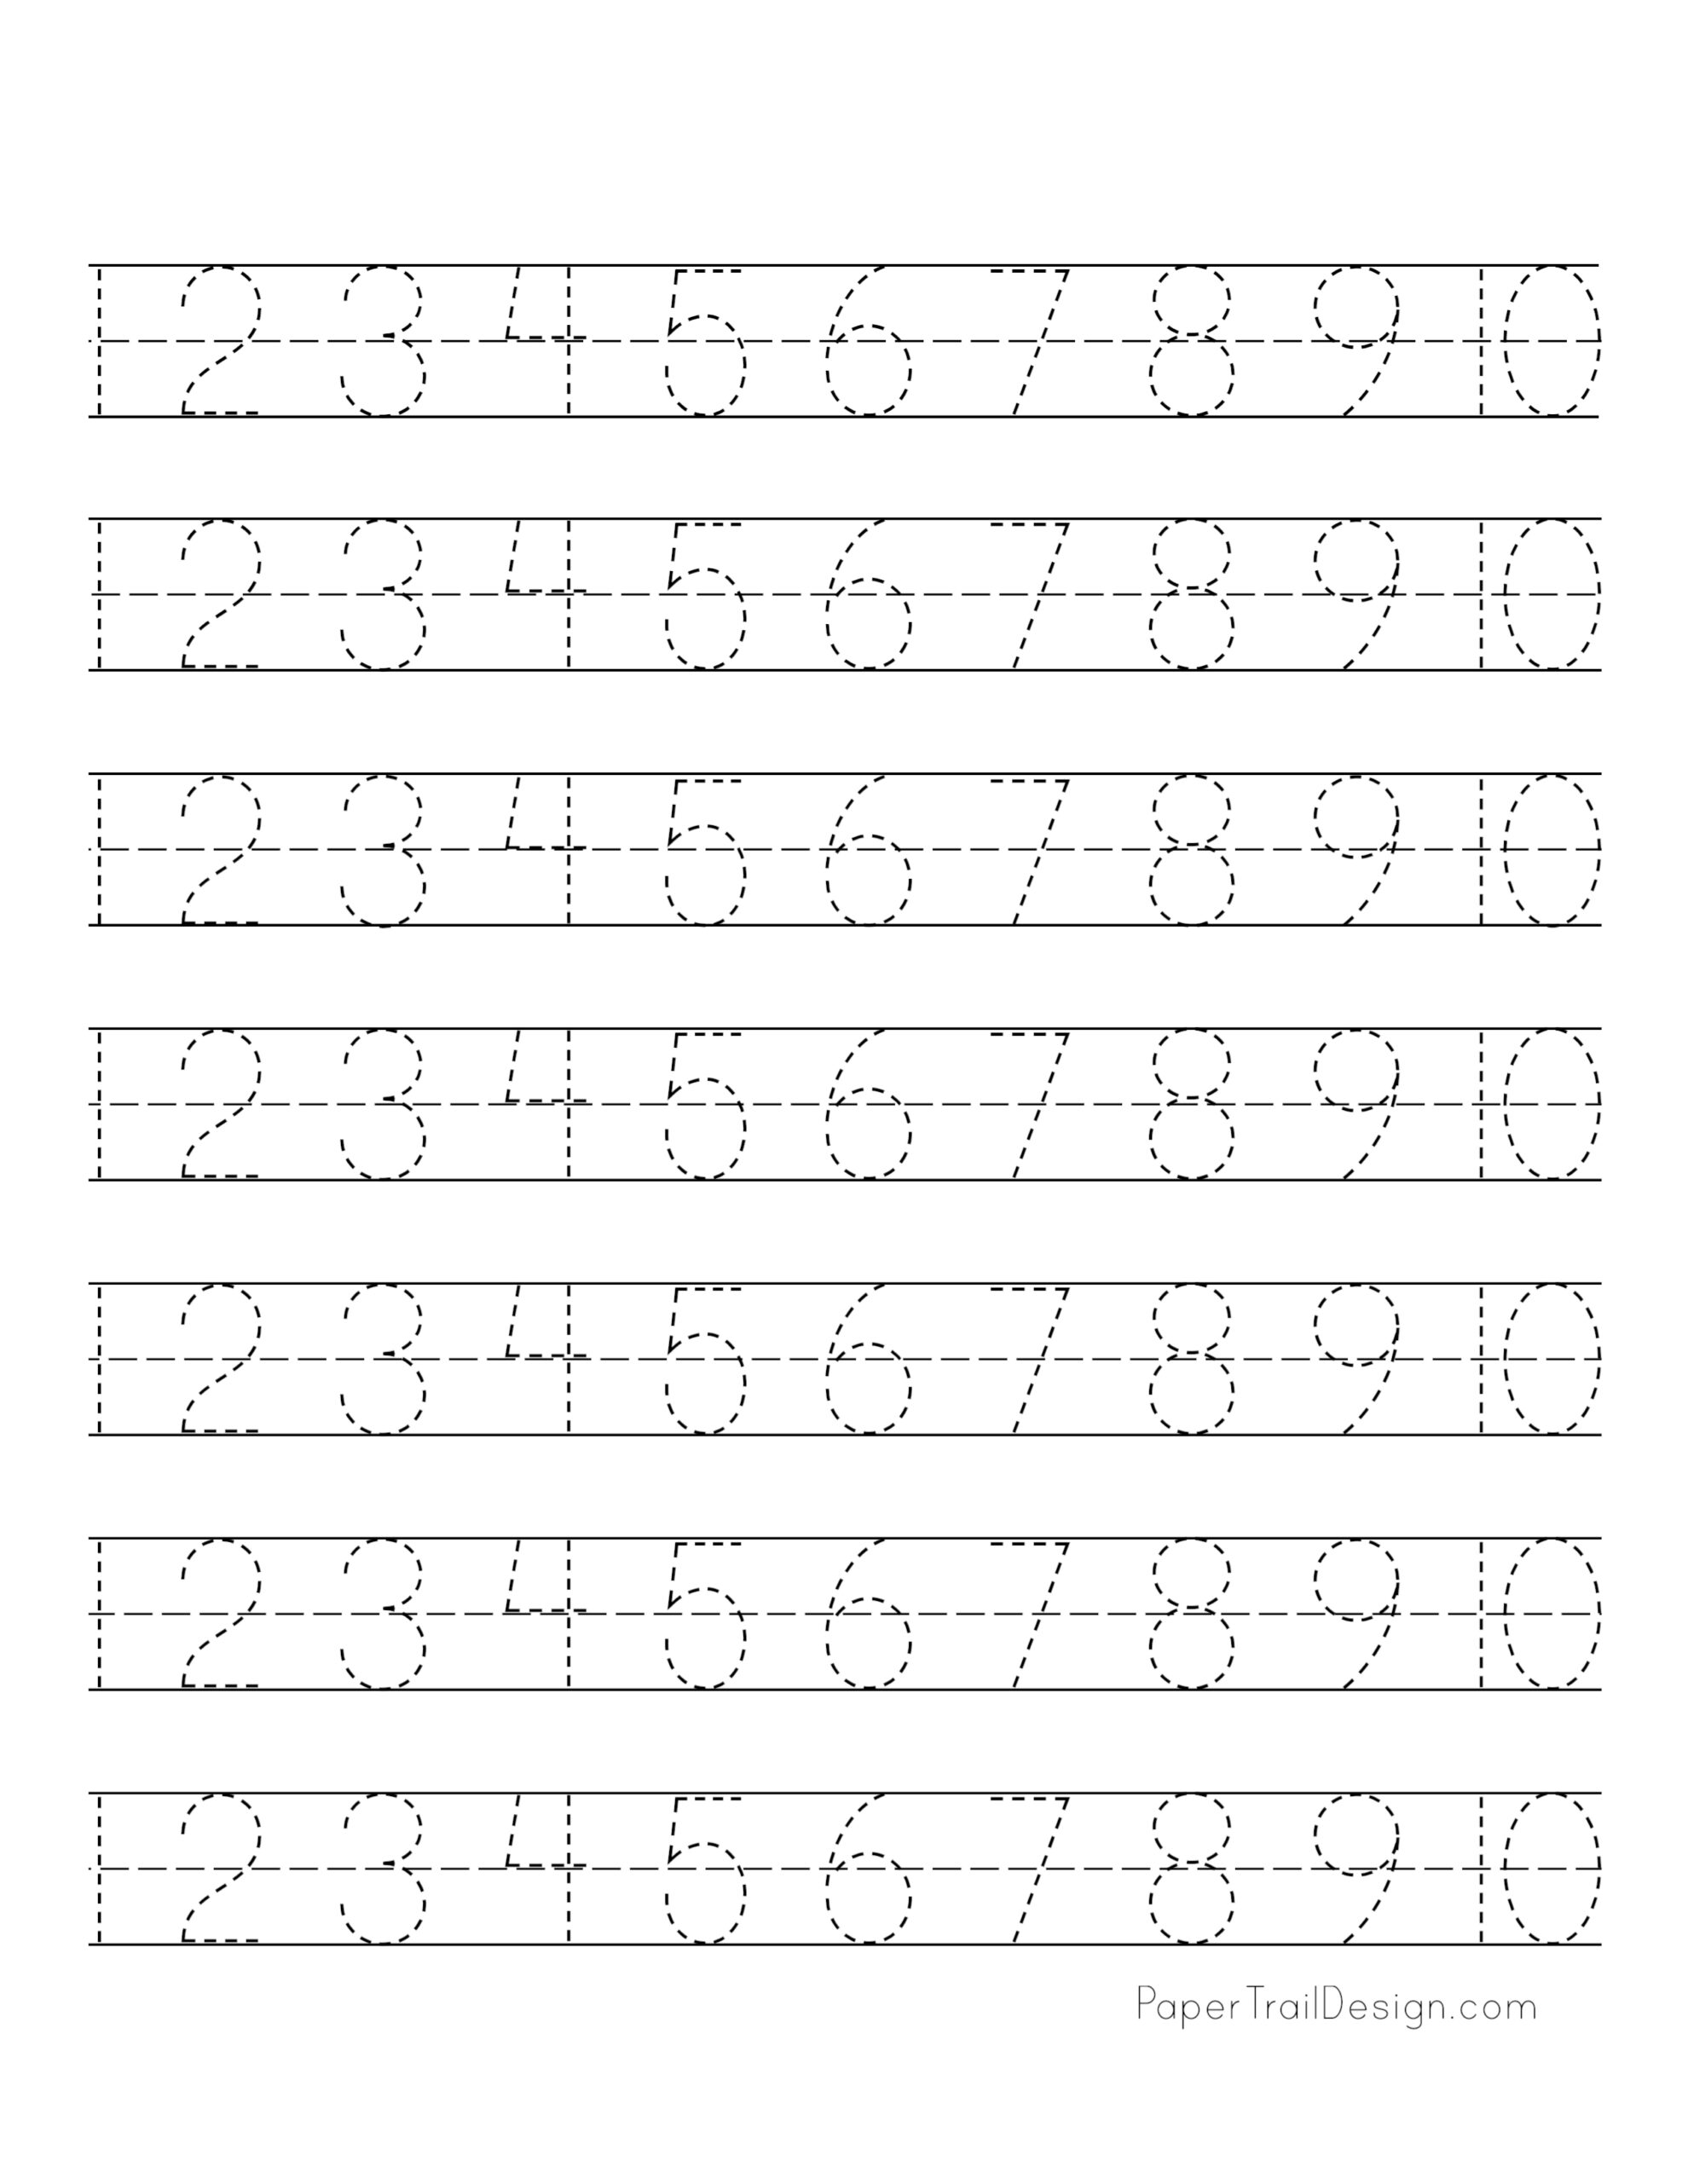 number-tracing-1-10-worksheet-free-printable-worksheets-worksheetfun